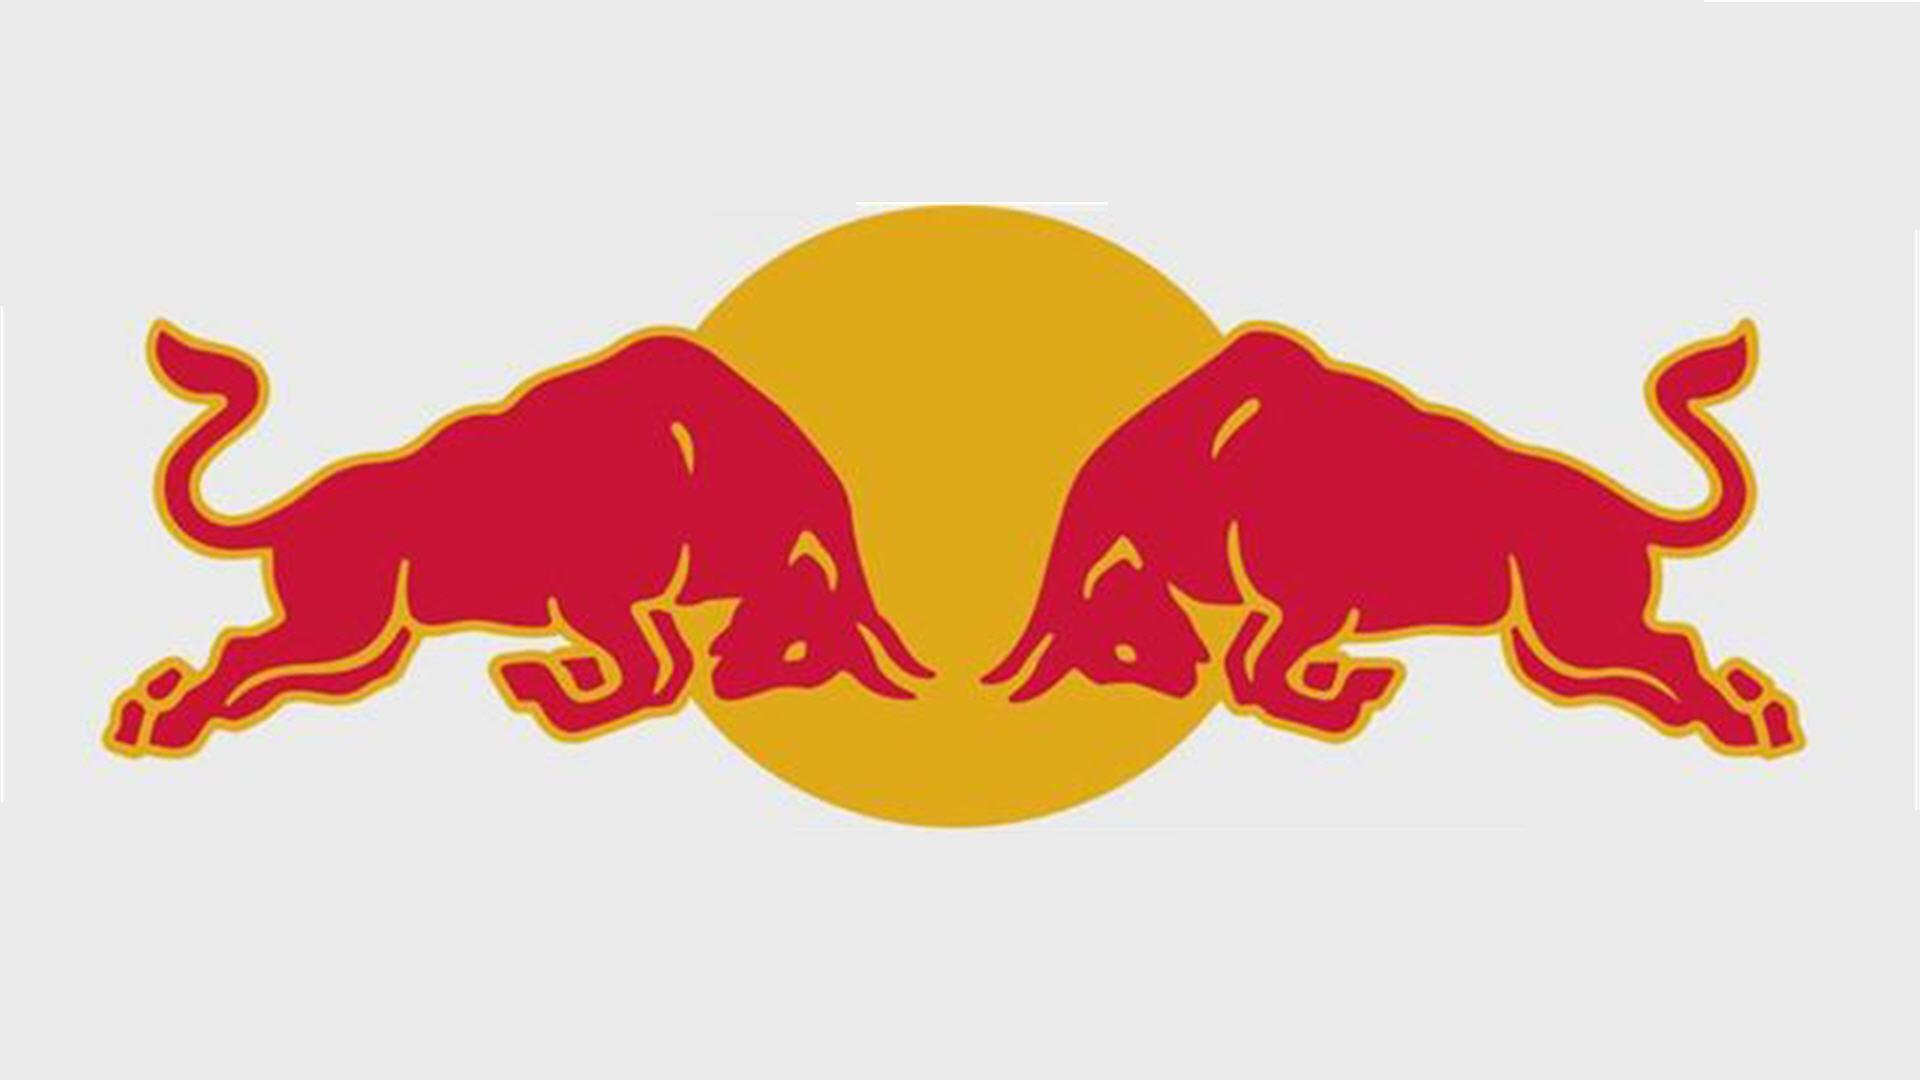 Bul Logo - Red Bull Logo Wallpapers - Wallpaper Cave